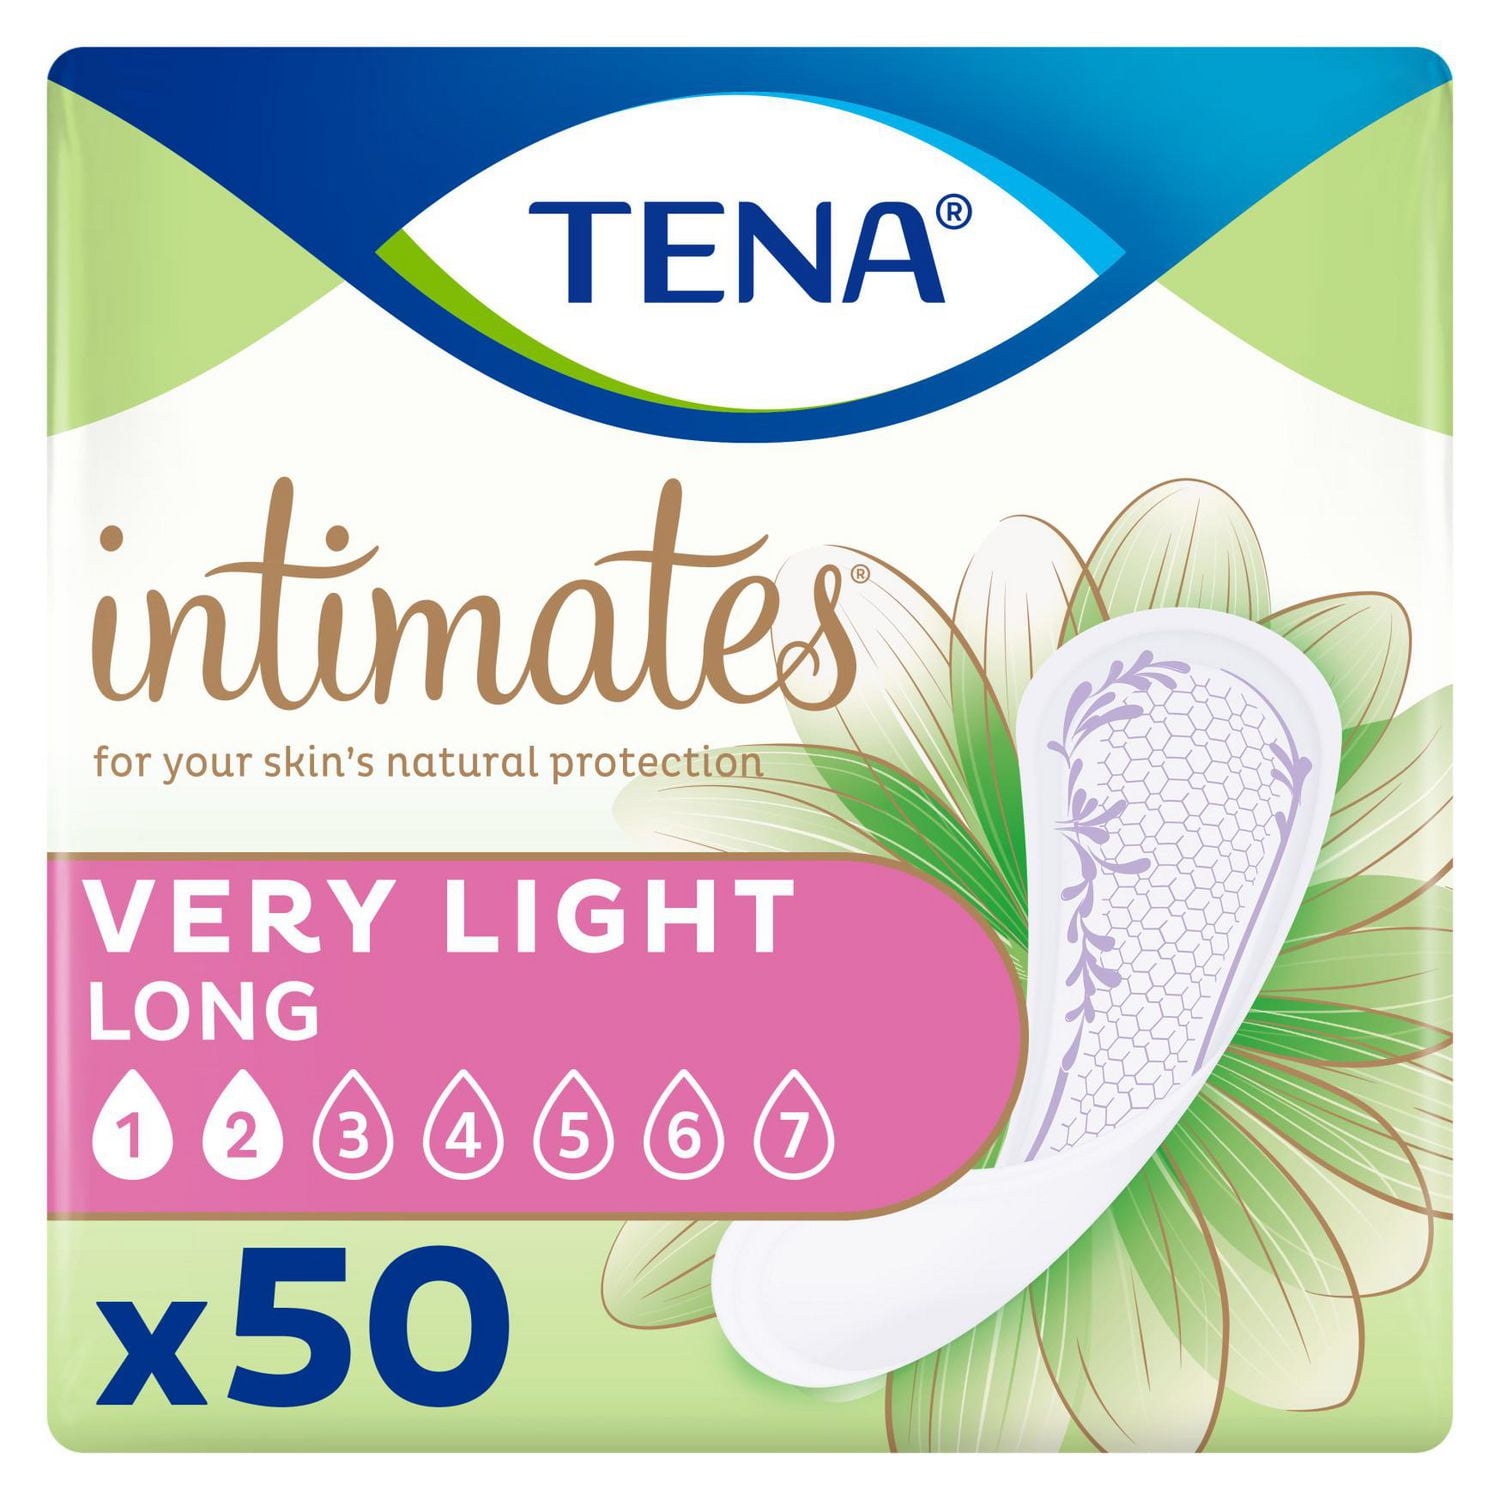 TENA Discreet Night Pad  Light Urinary Pads - TENA